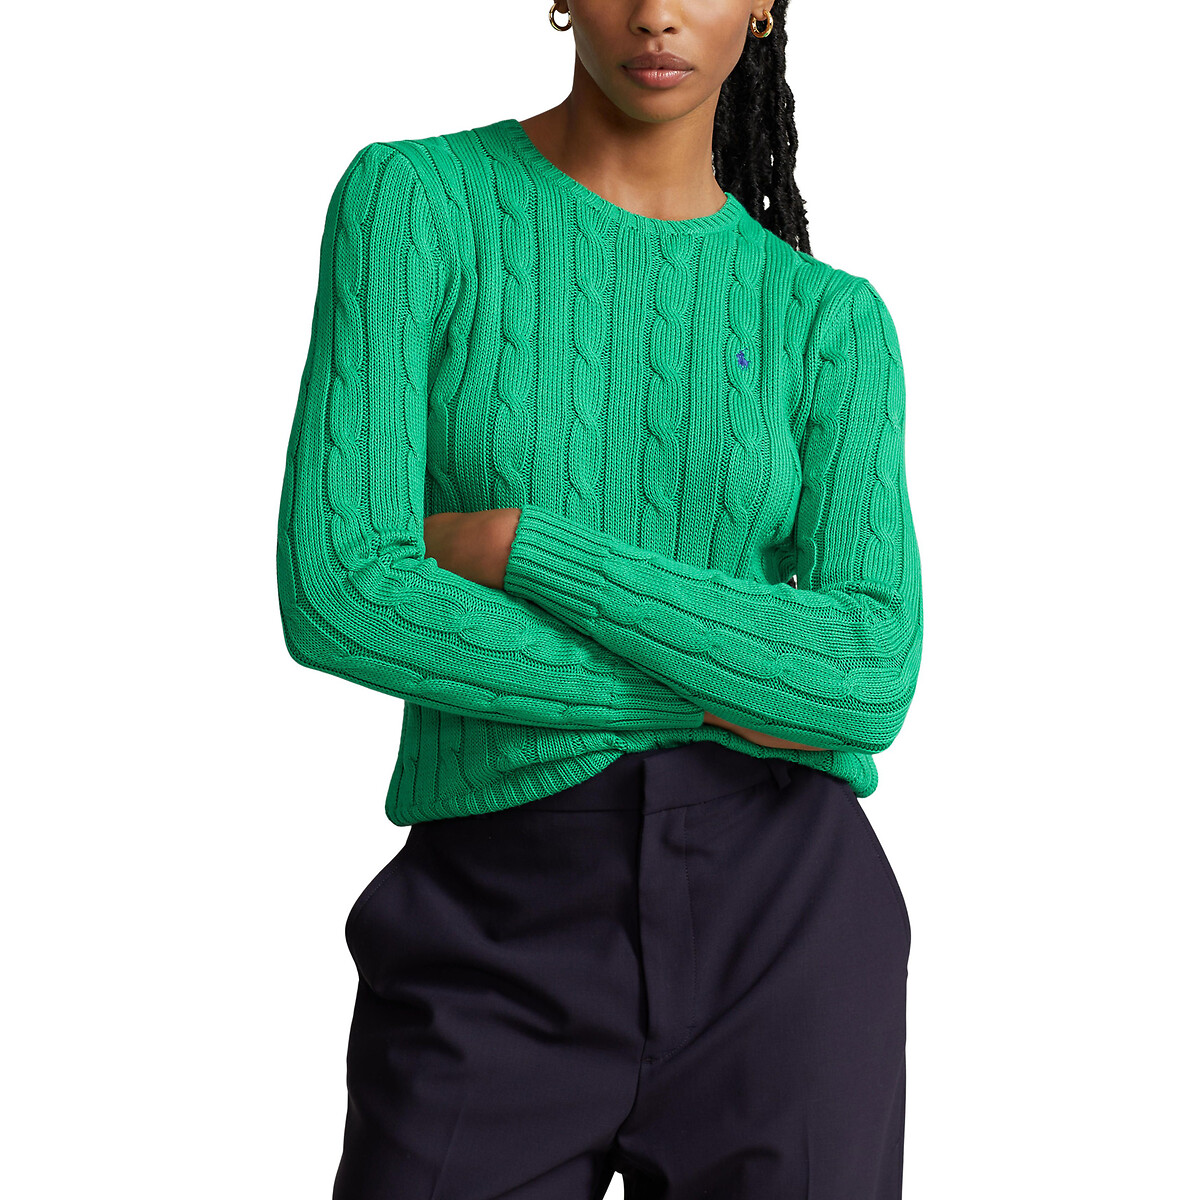 Пуловер Julianna из витого трикотажа с круглым вырезом M зеленый пуловер с витым узором и круглым вырезом xs черный